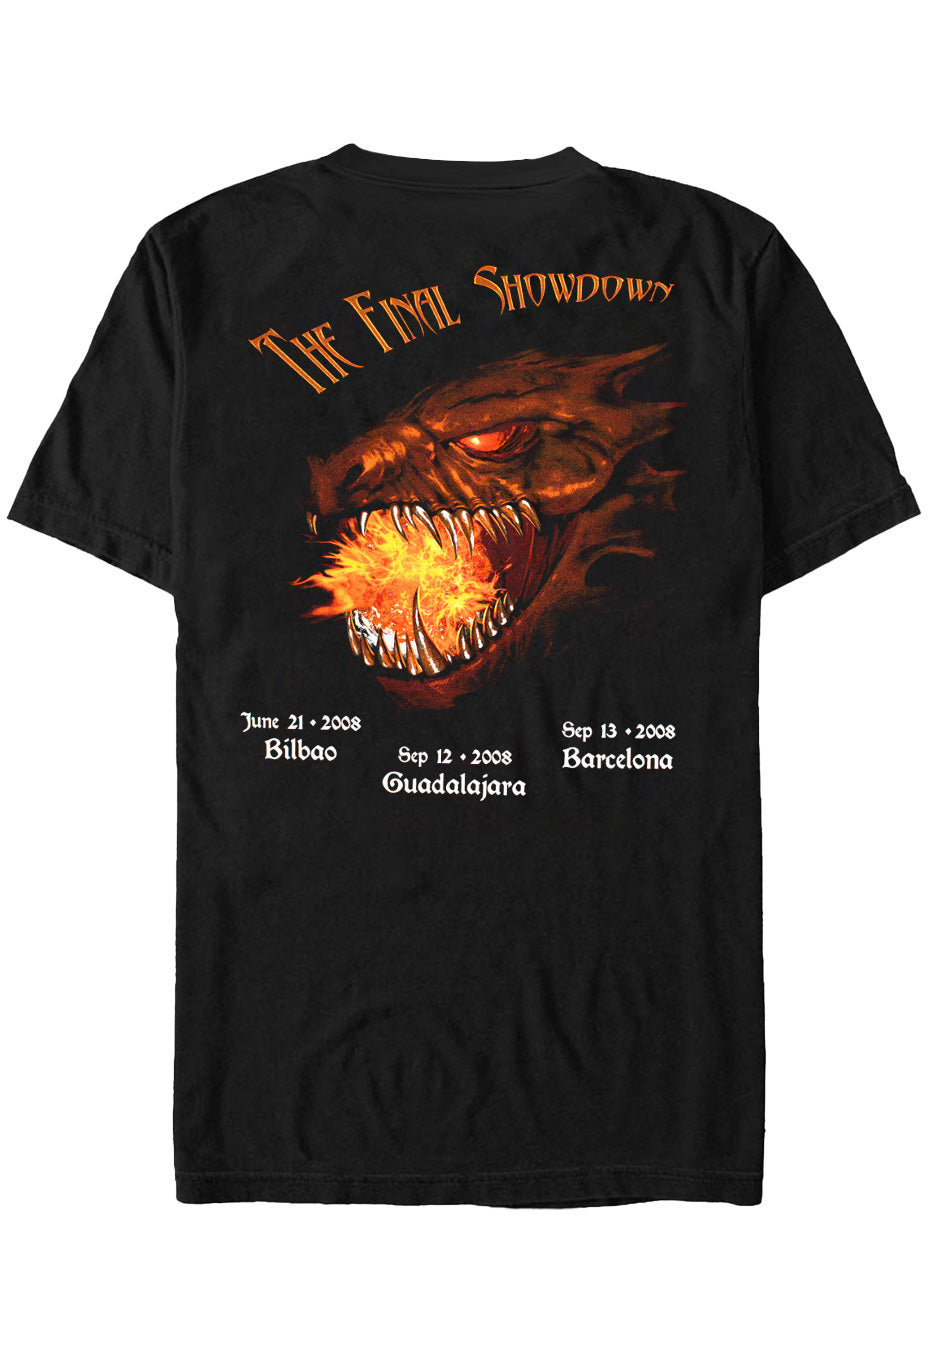 Blind Guardian - Final Showdown Spain 2008 - T-Shirt